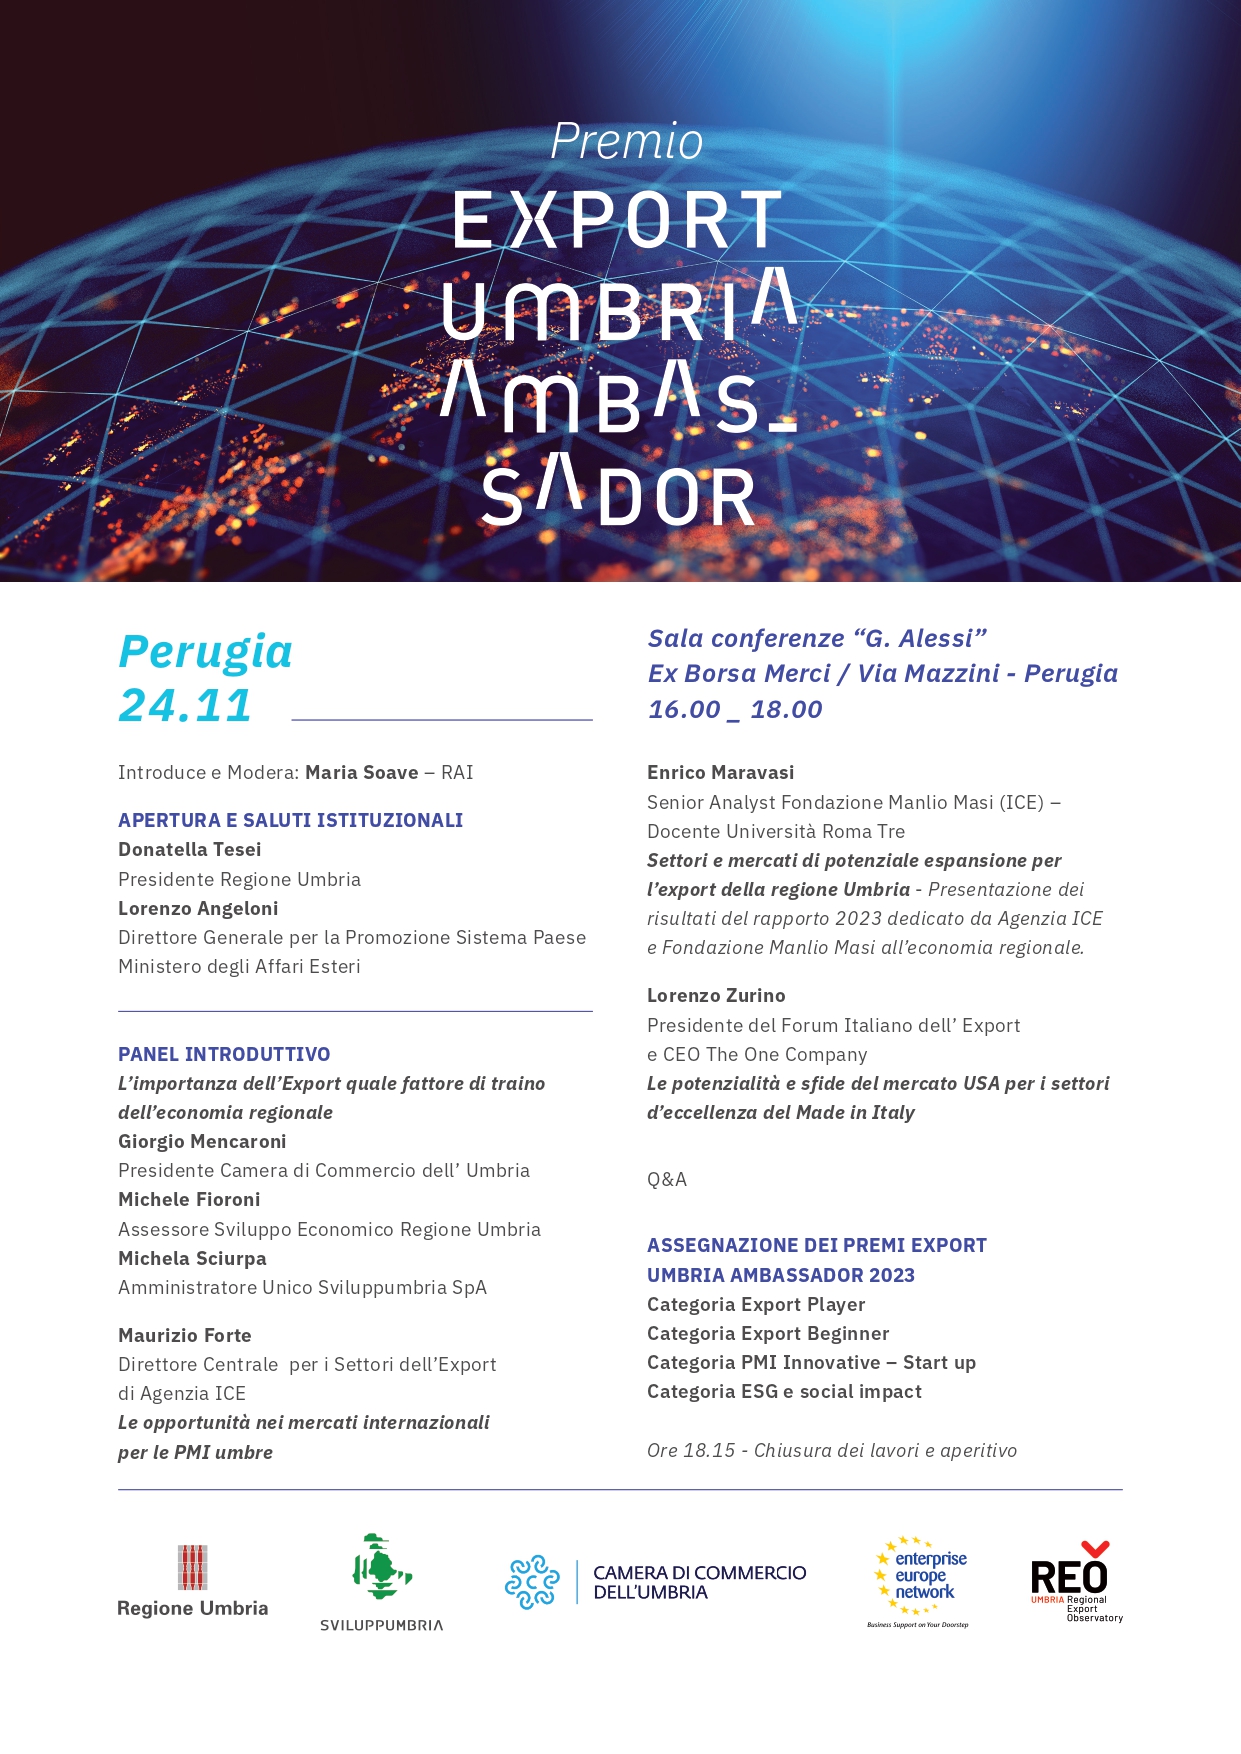 Umbria Export Ambassador 2023